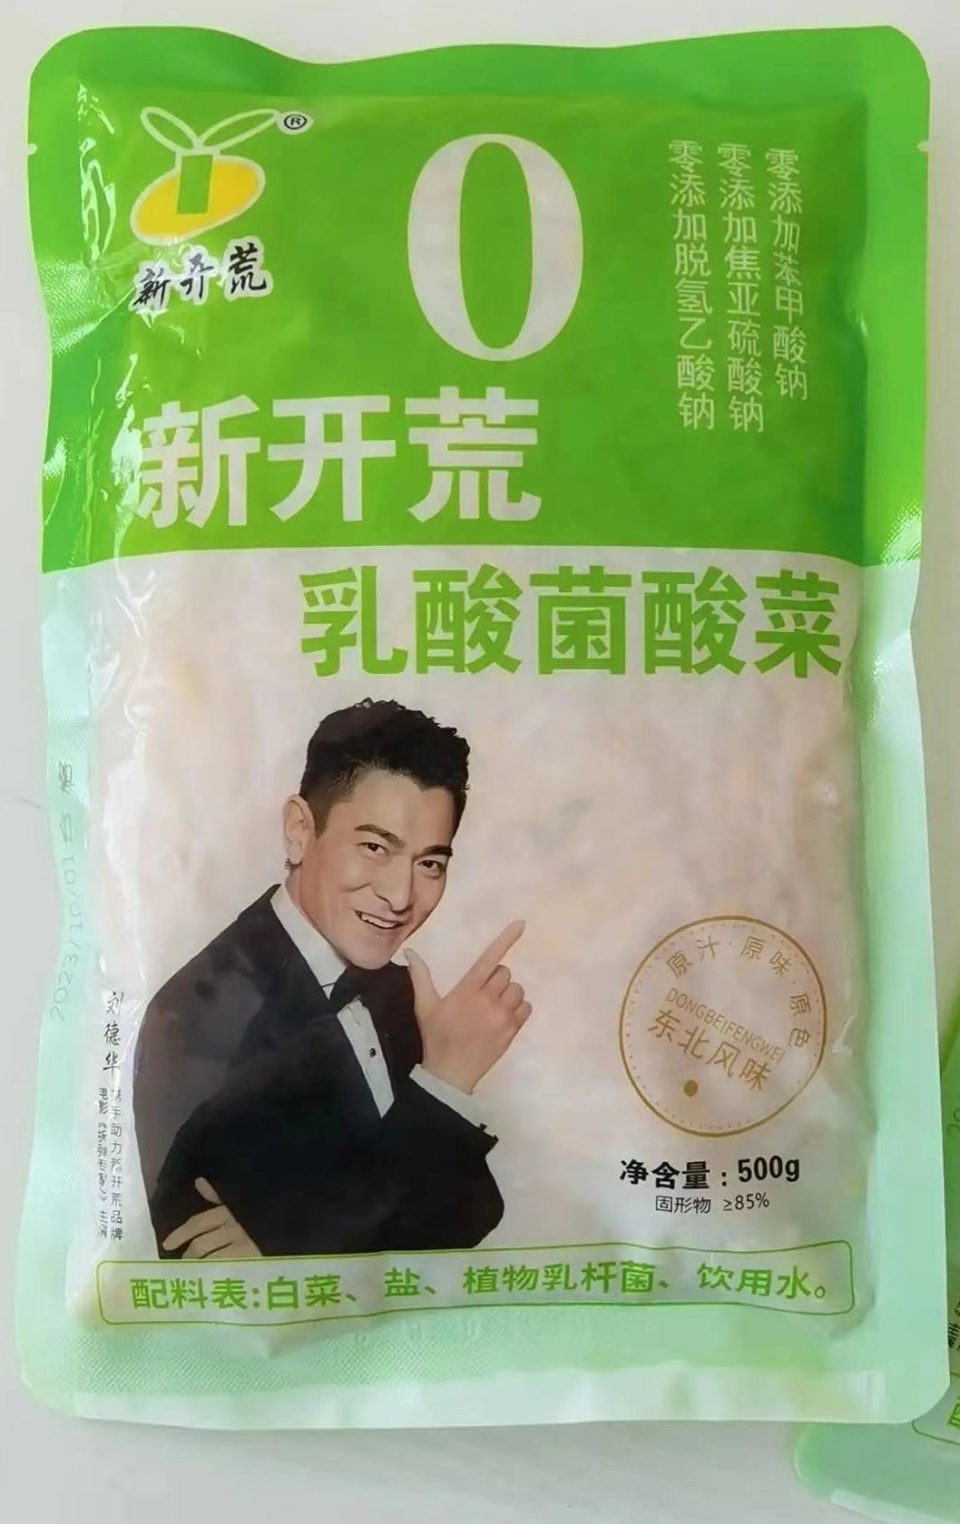 酸菜包裝袋印有劉德華劇照。圖/網絡